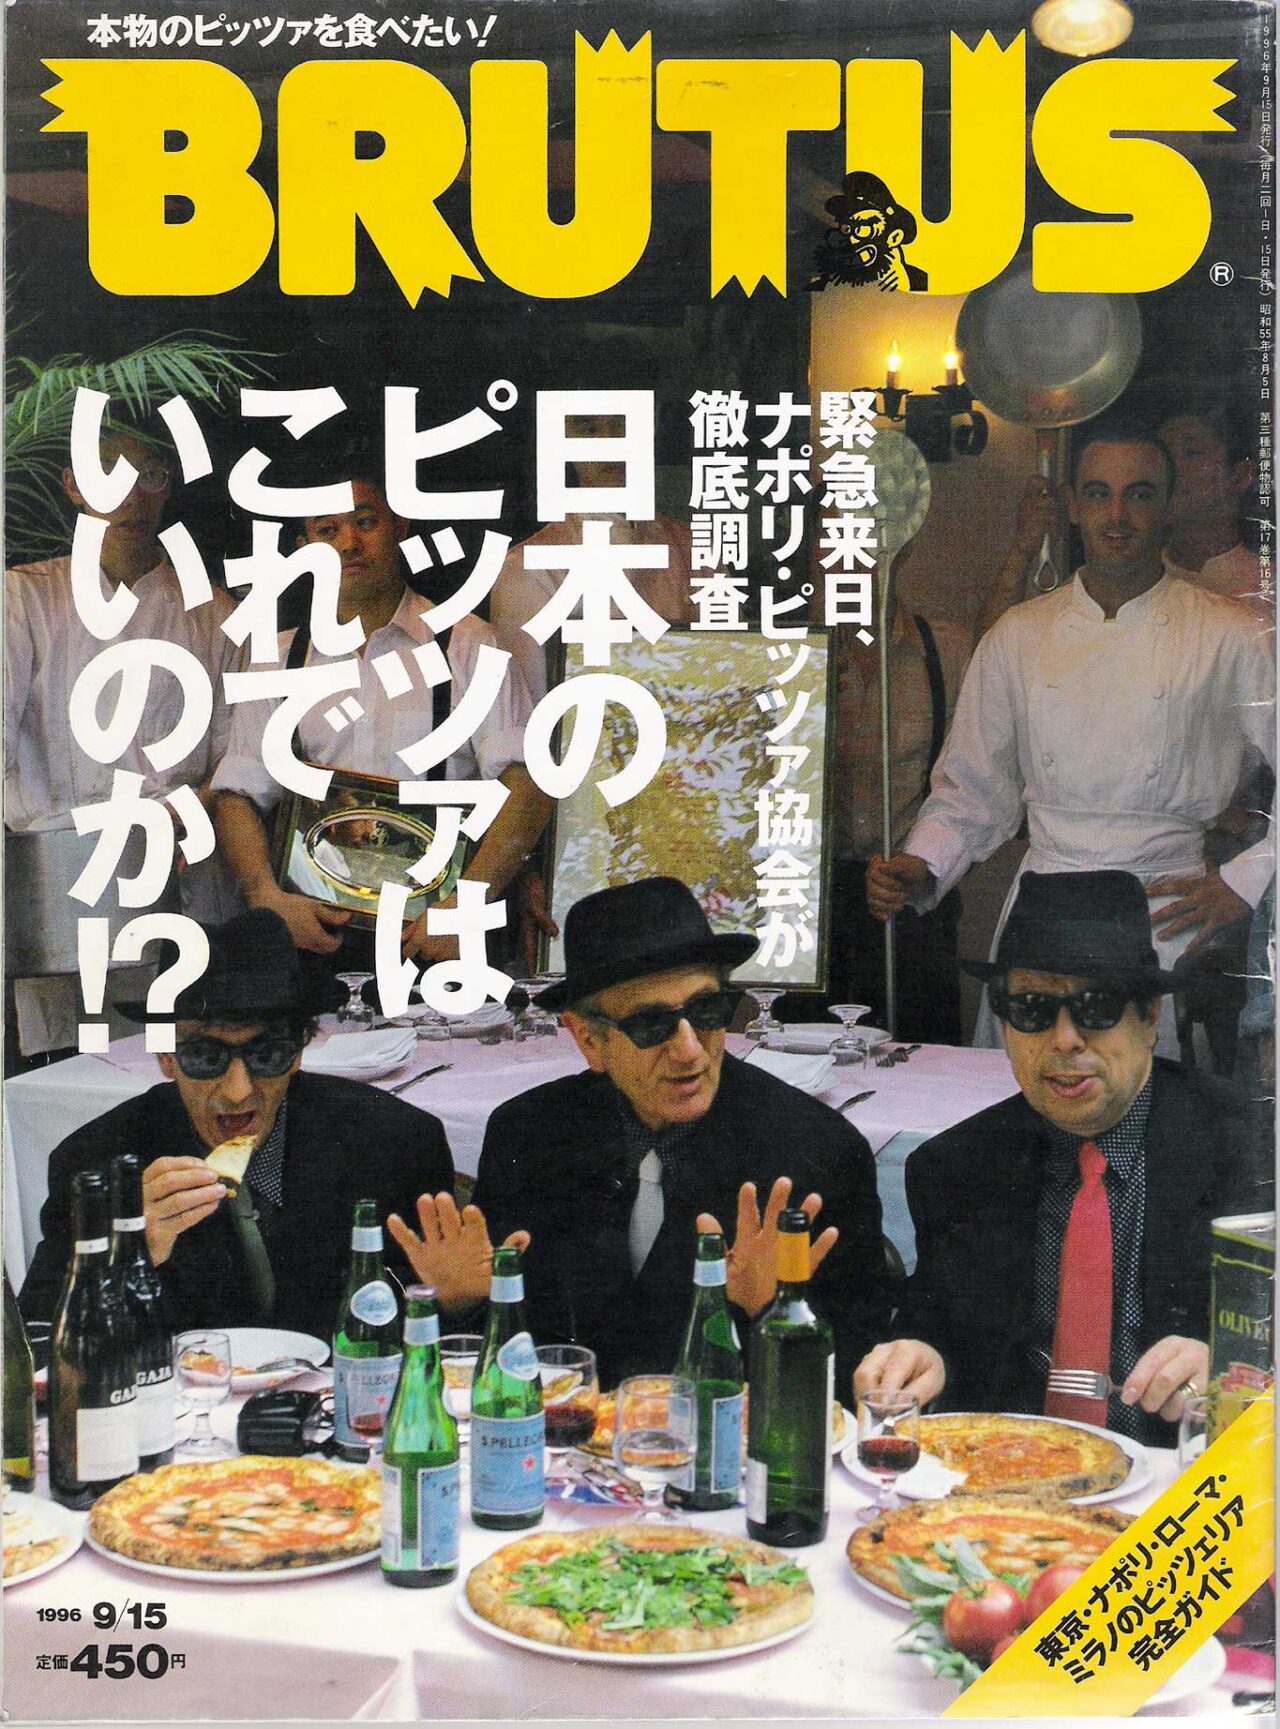 Gaetano Fazio pizzaiolo sulla copertina di Brutus in Giappone